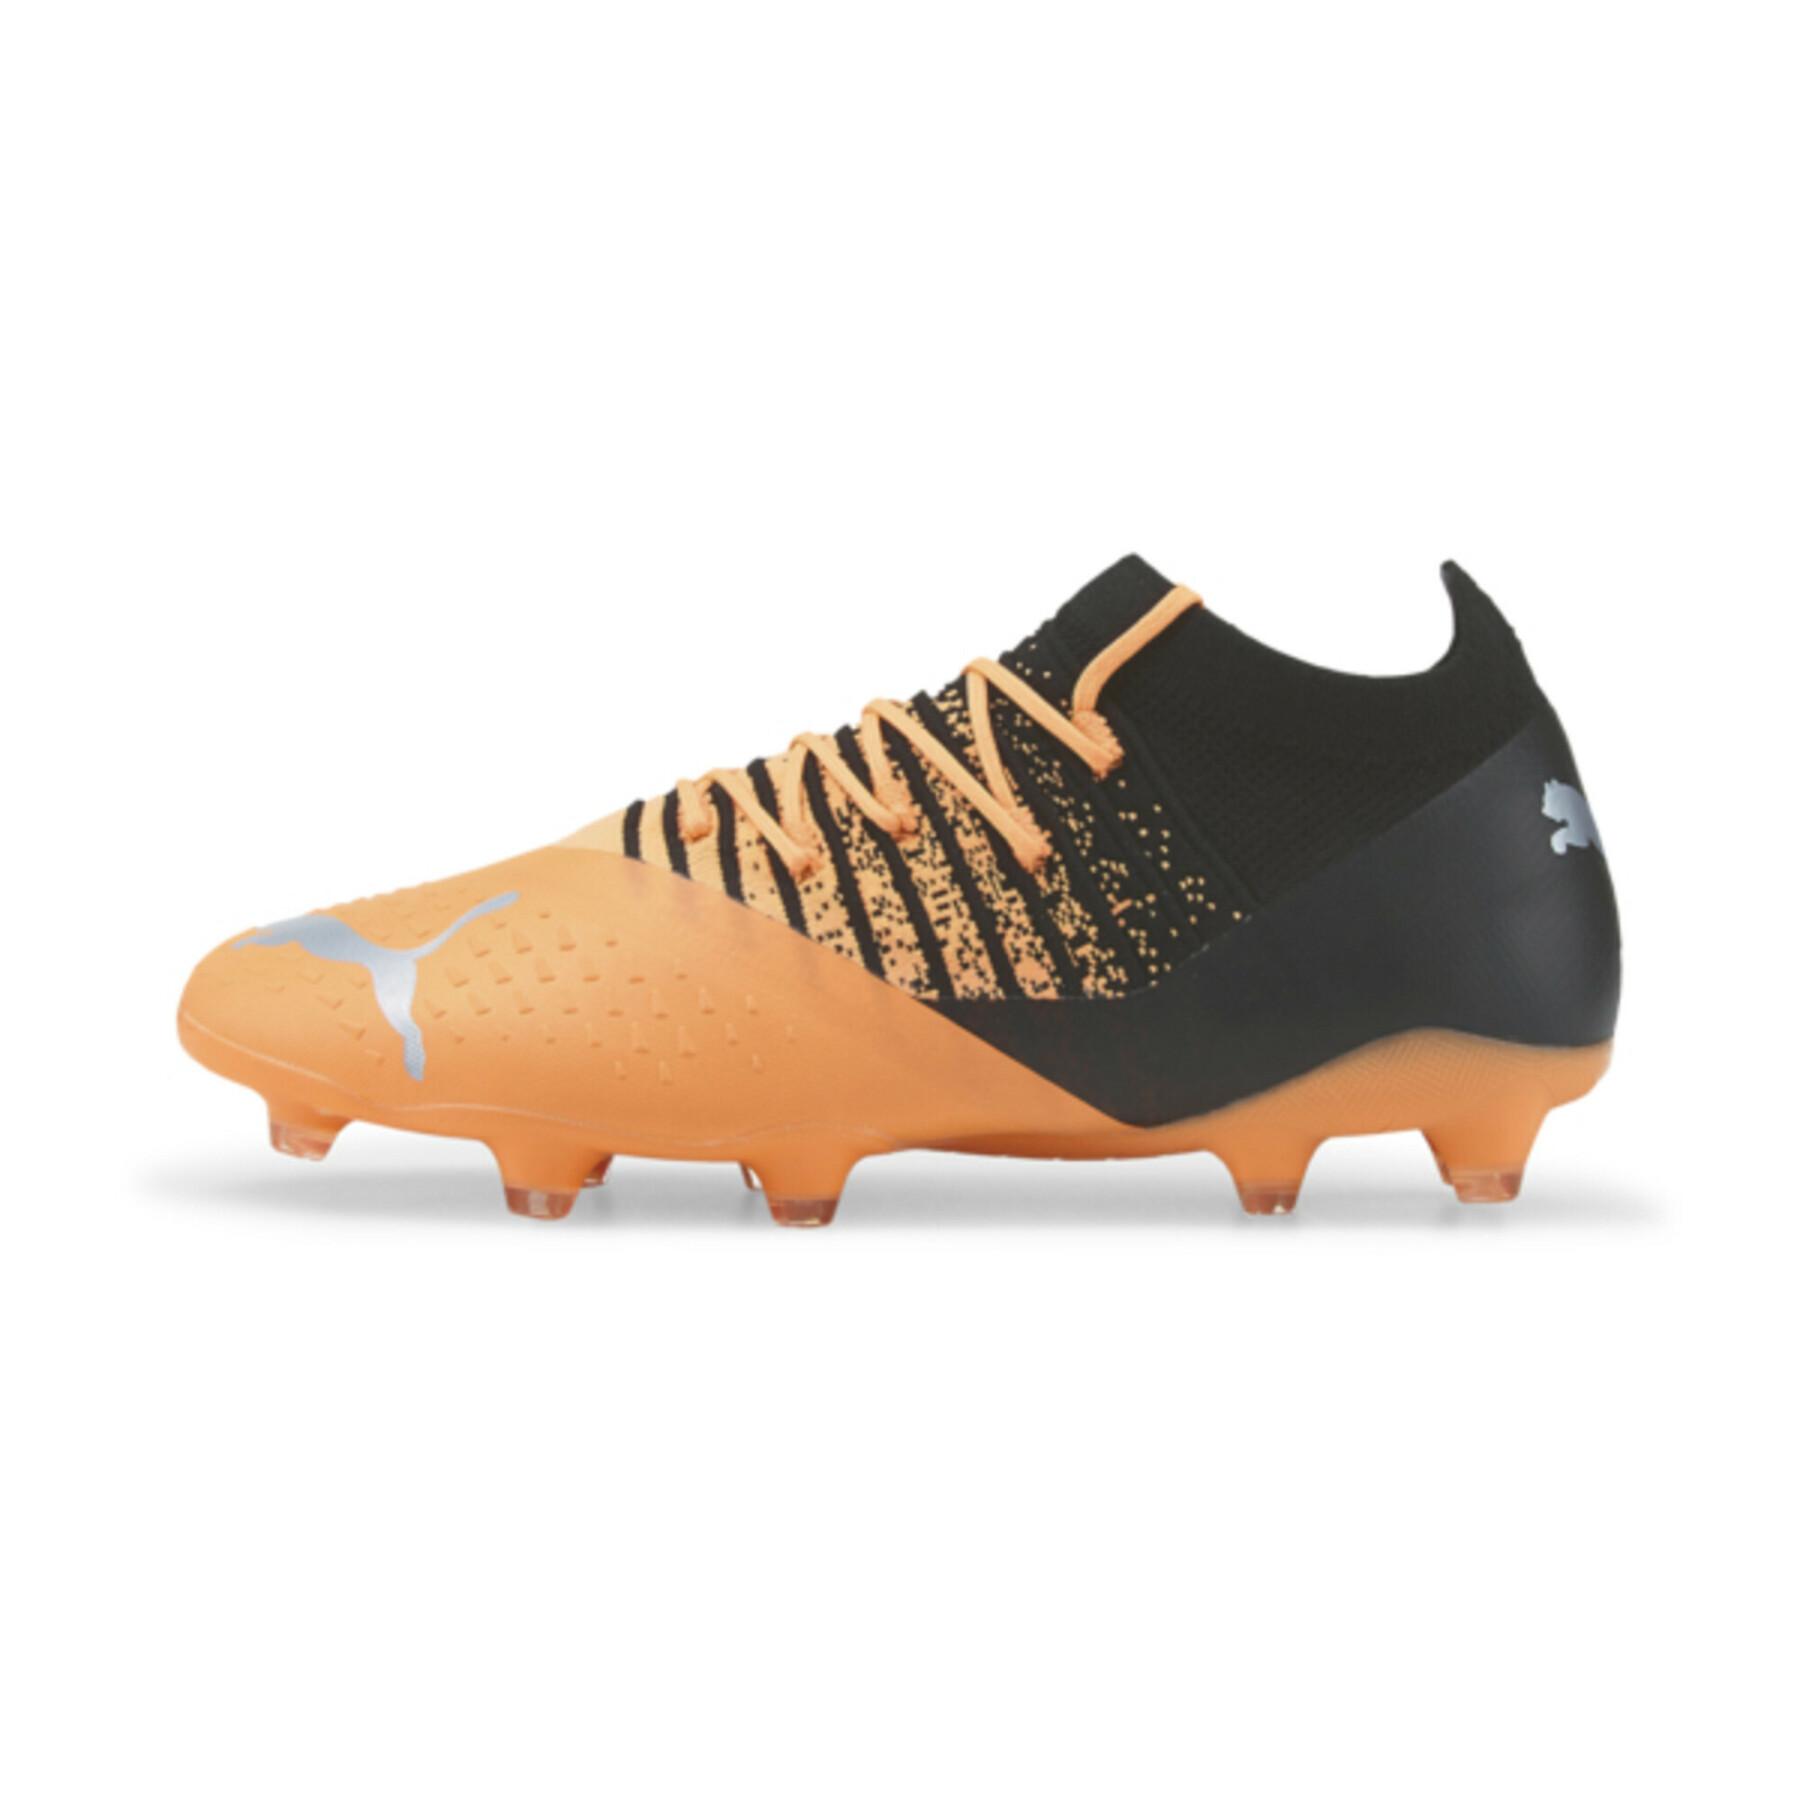 Soccer shoes Puma FUTURE Z 3.3 FG/AG - Instinct Pack